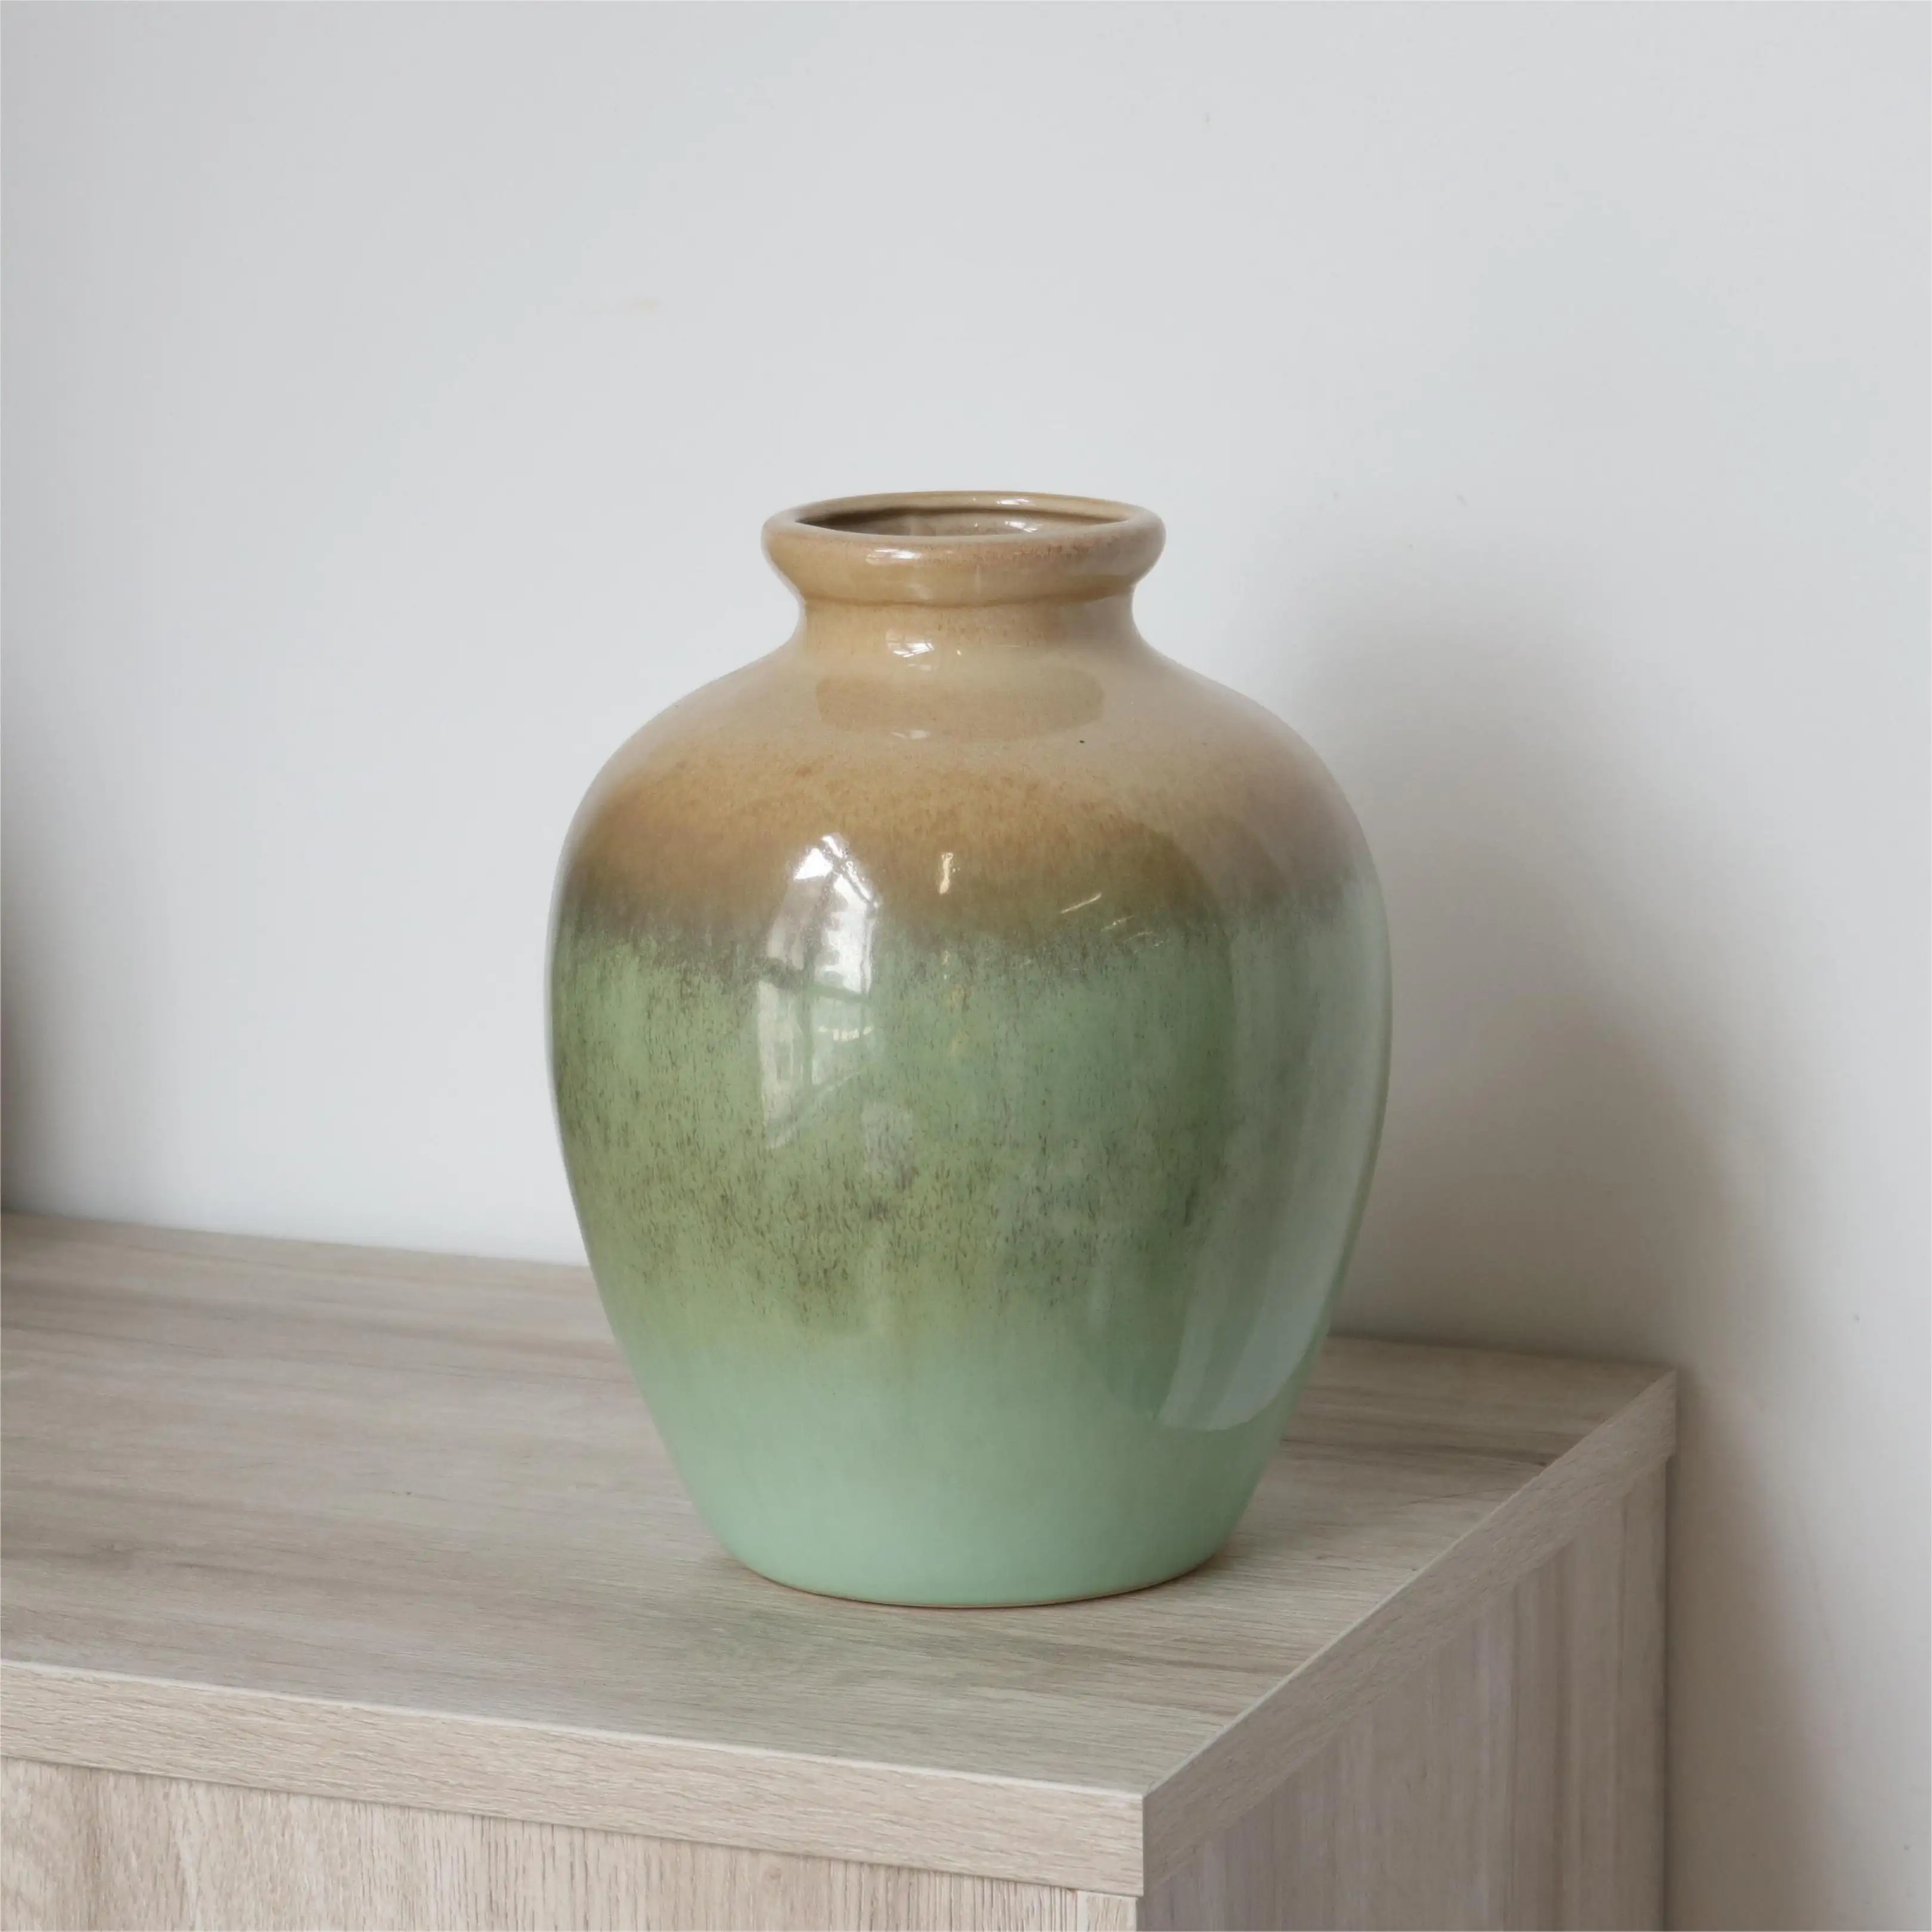 Çin antika tarzı seladonlar yeşil ve açık kahverengi degrade reaktif sırlı rustik el yapımı çömlek vazo dekoratif